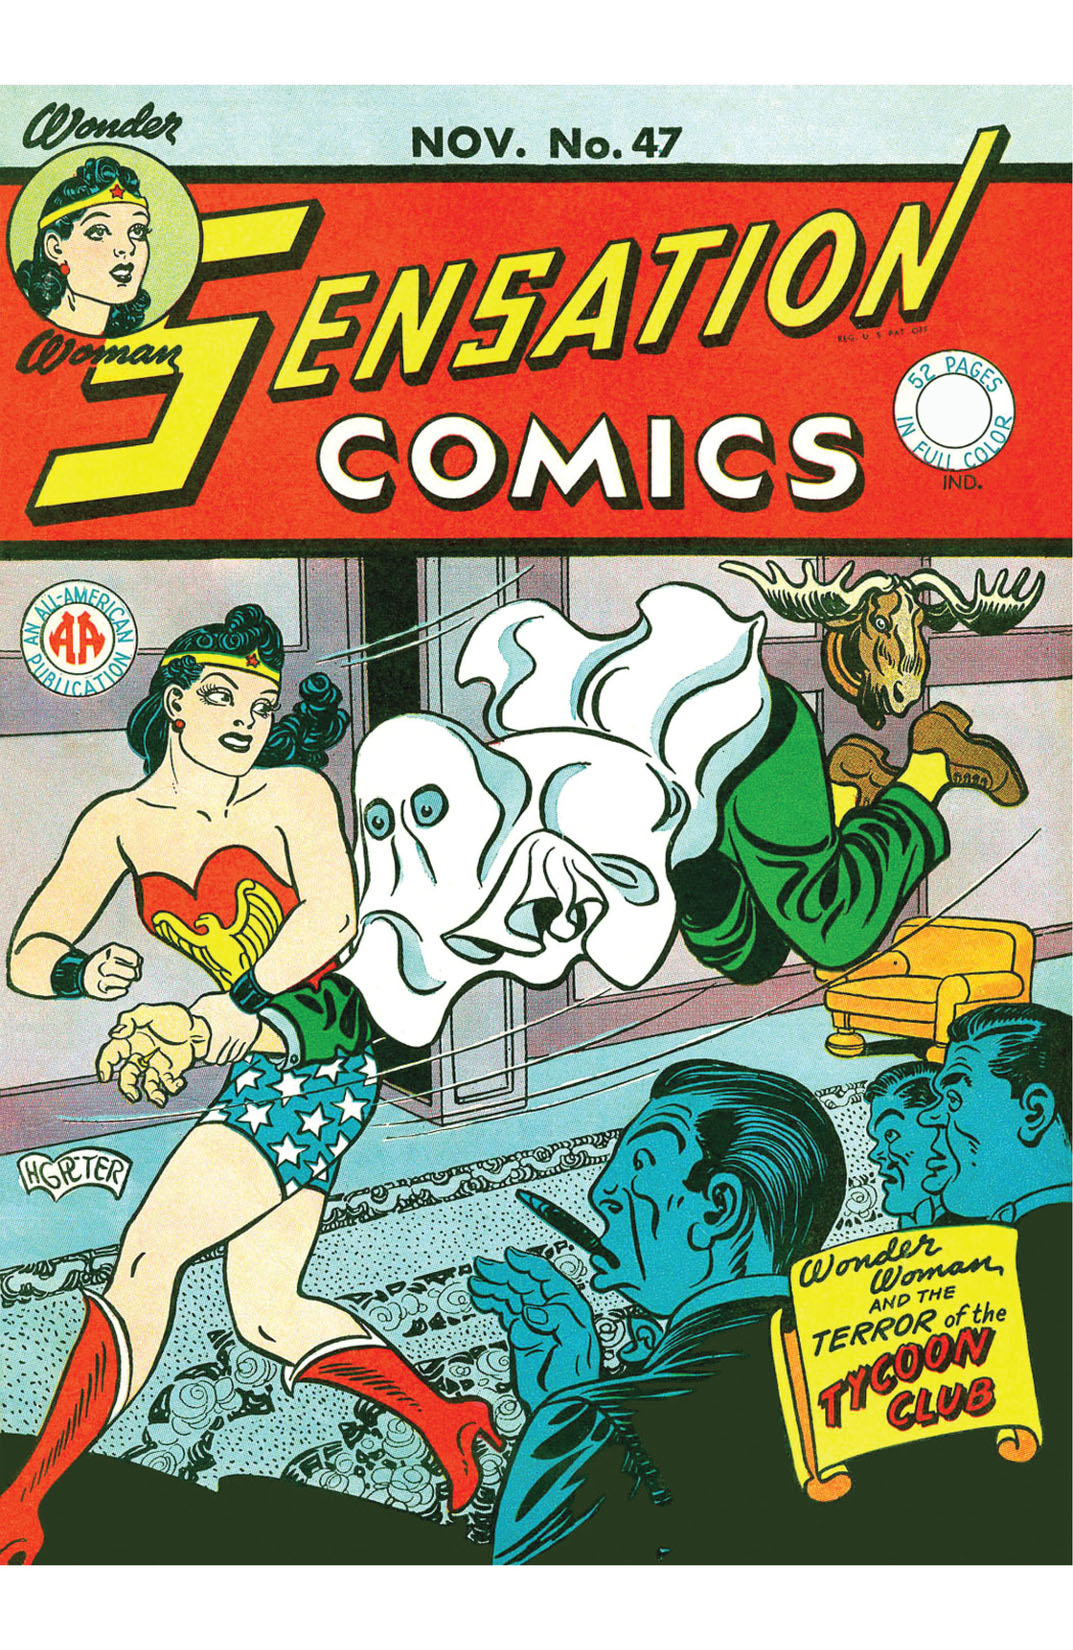 Sensation Comics #47 preview images